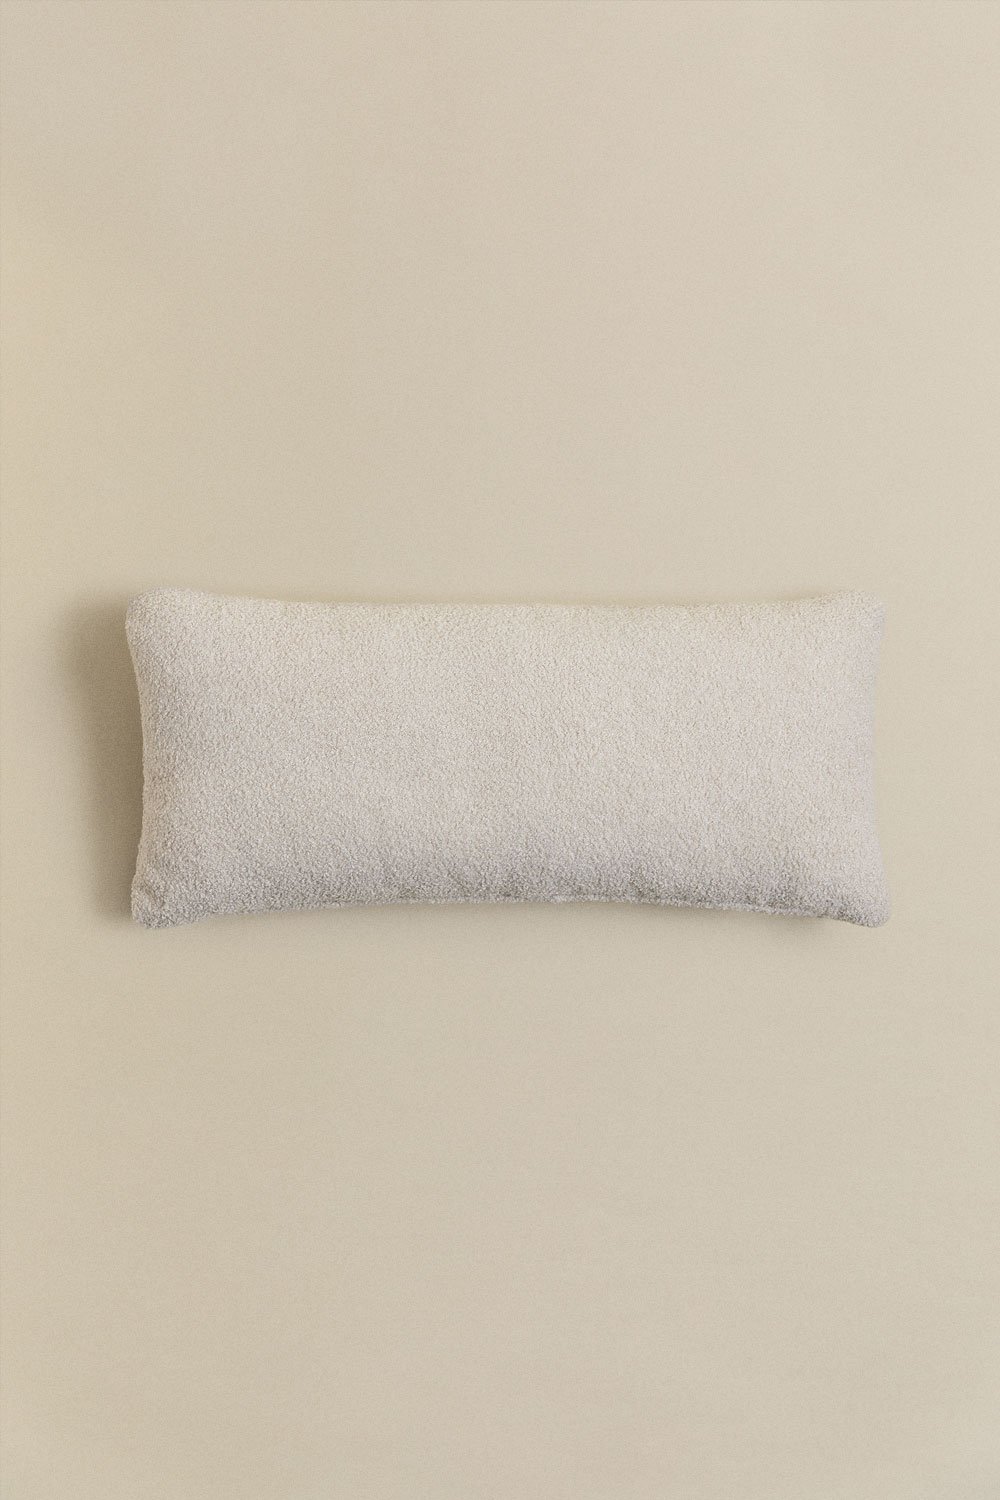 Prostokątna poduszka z owczej skóry (70x30 cm) Borjan, obrazek w galerii 1